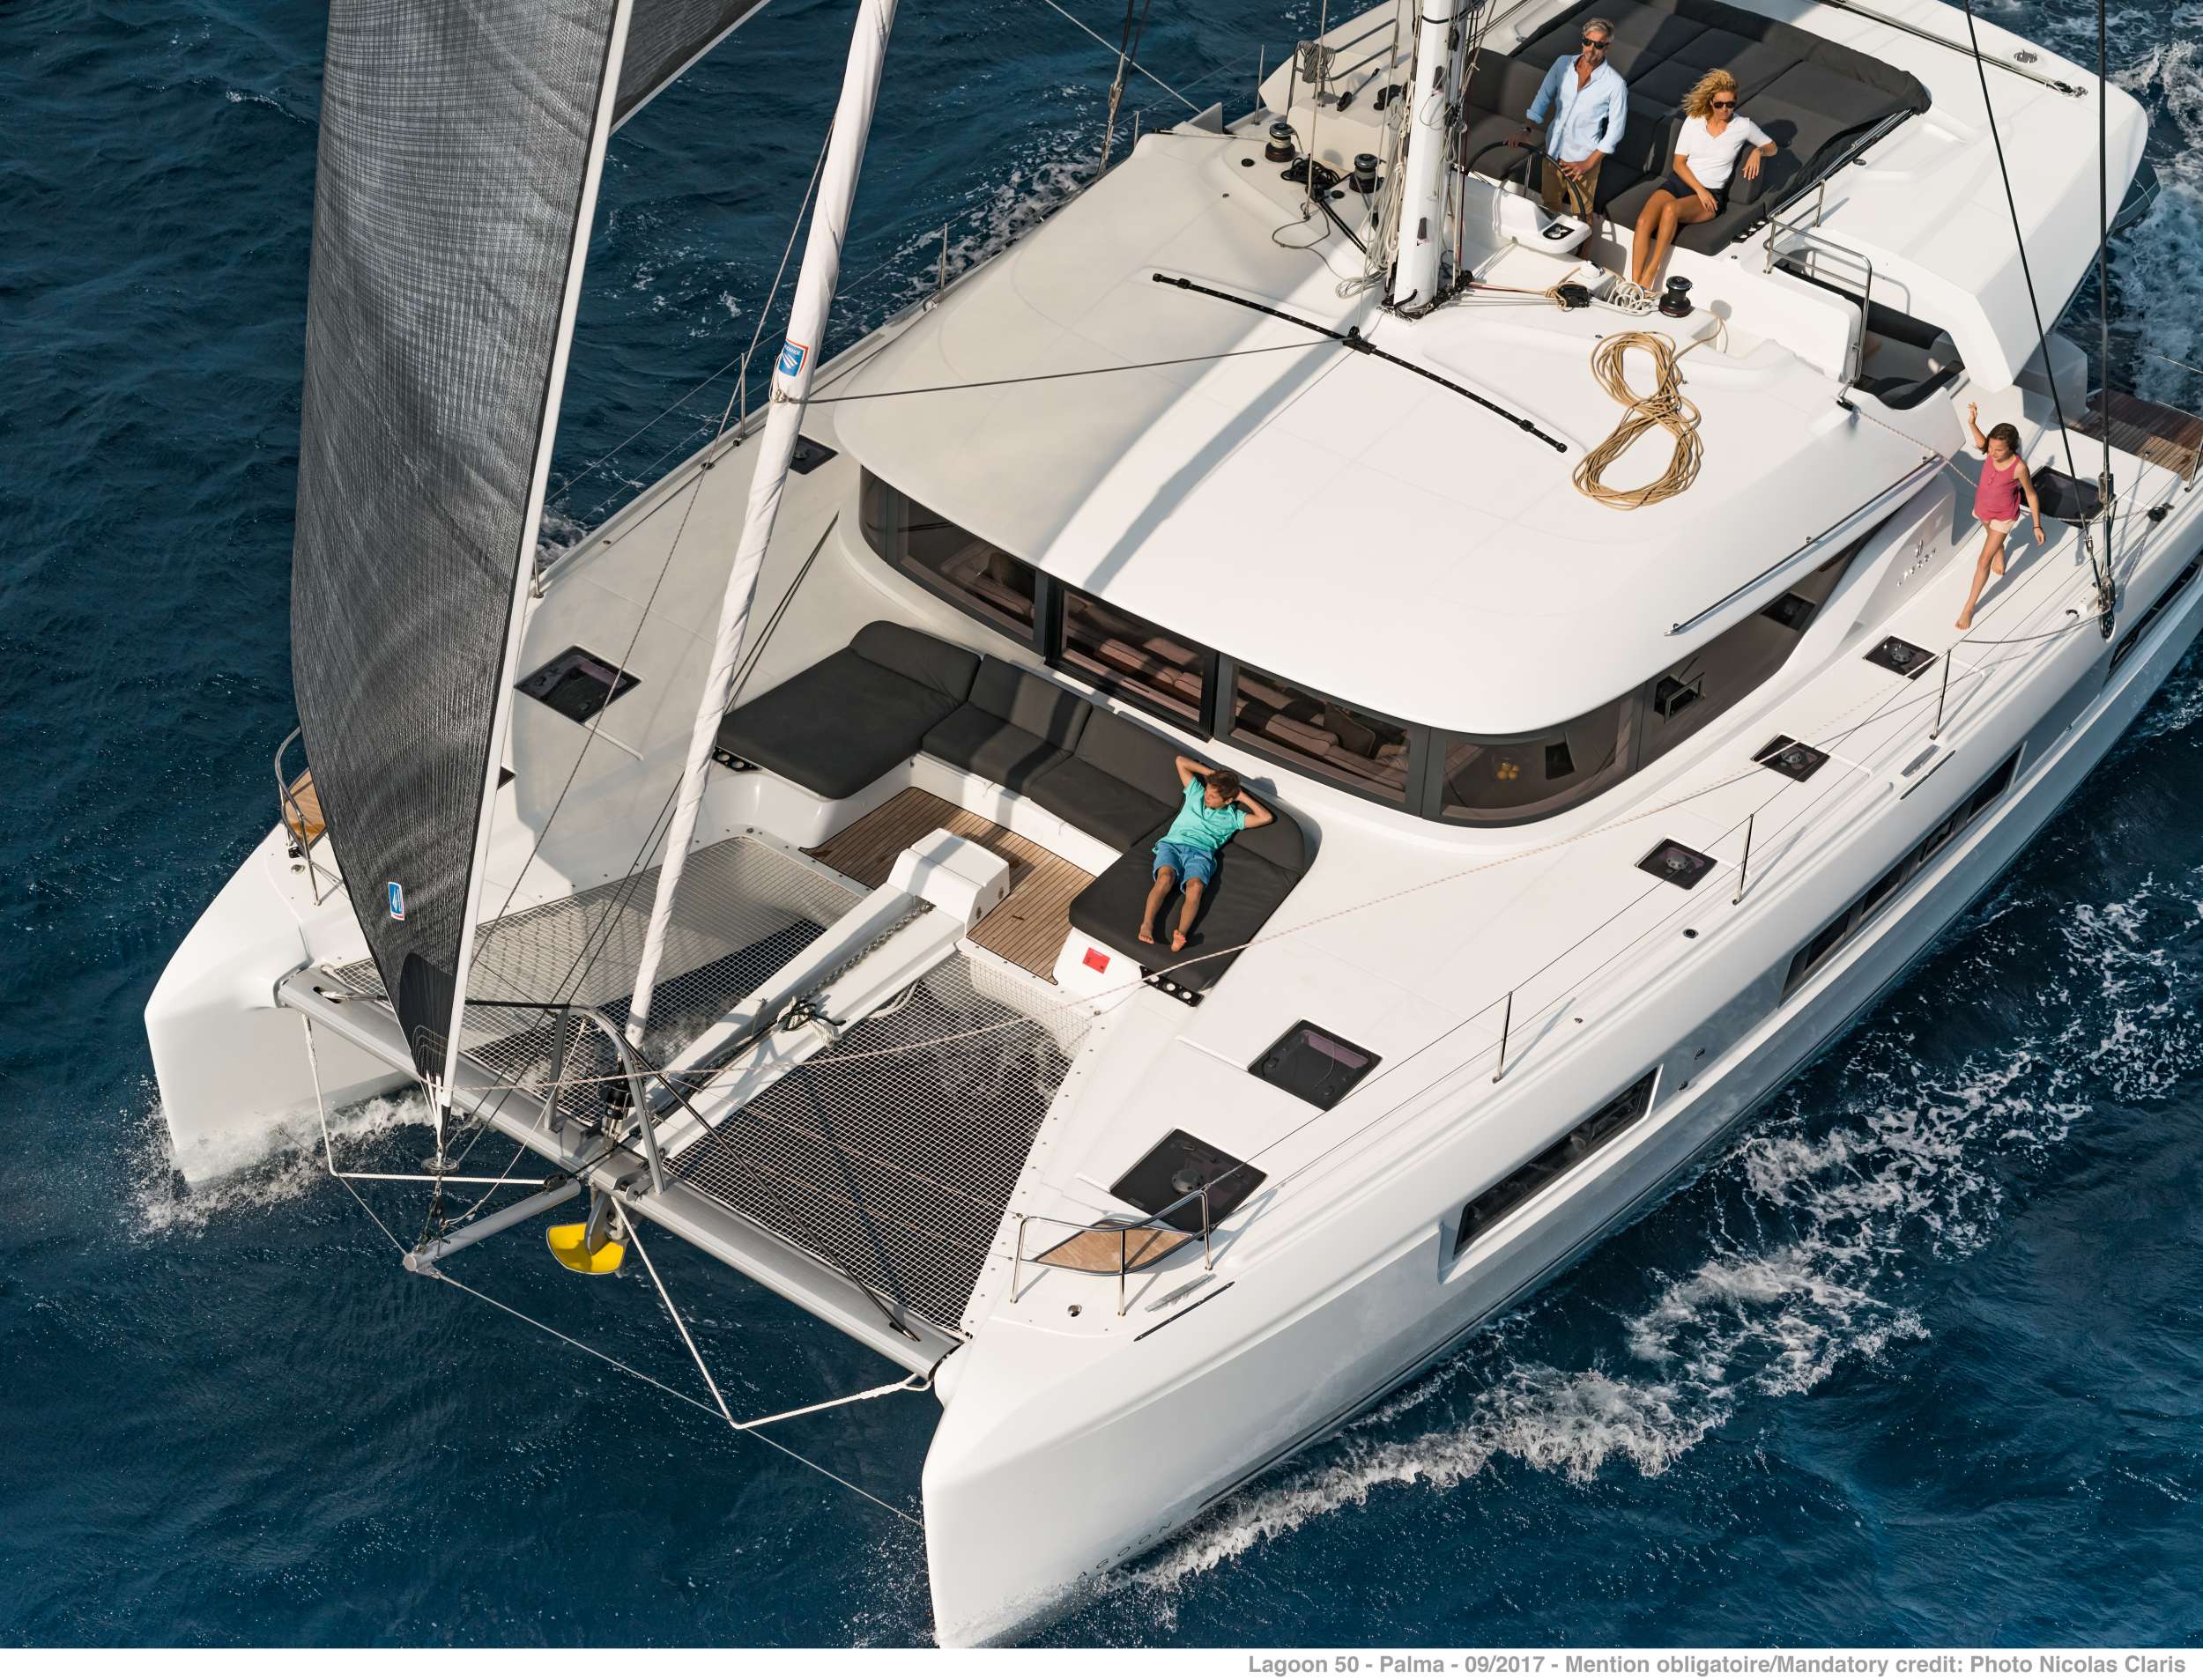 ONEIDA 2 - Luxury yacht charter Greece & Boat hire in Greece 6